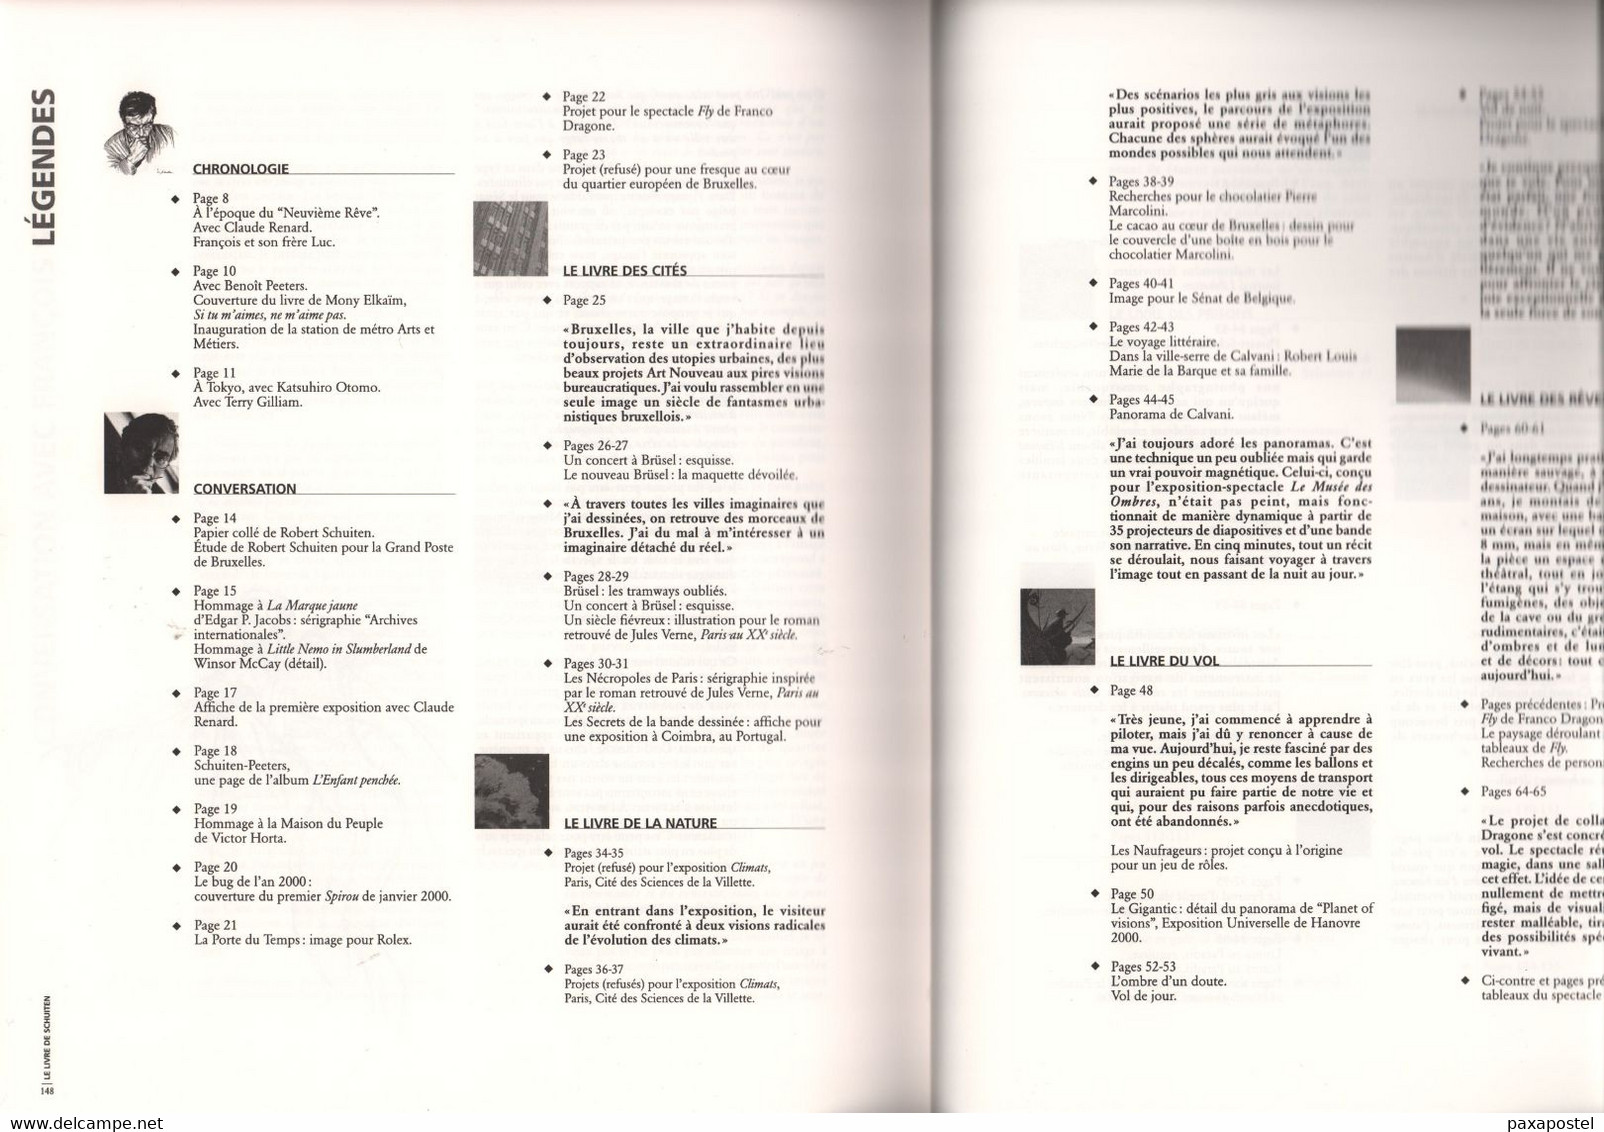 Le Livre De / The Book Of / Het Boek Van Schuiten (Casterrman 2004) ISBN 2-203-34319-2 - Andere & Zonder Classificatie